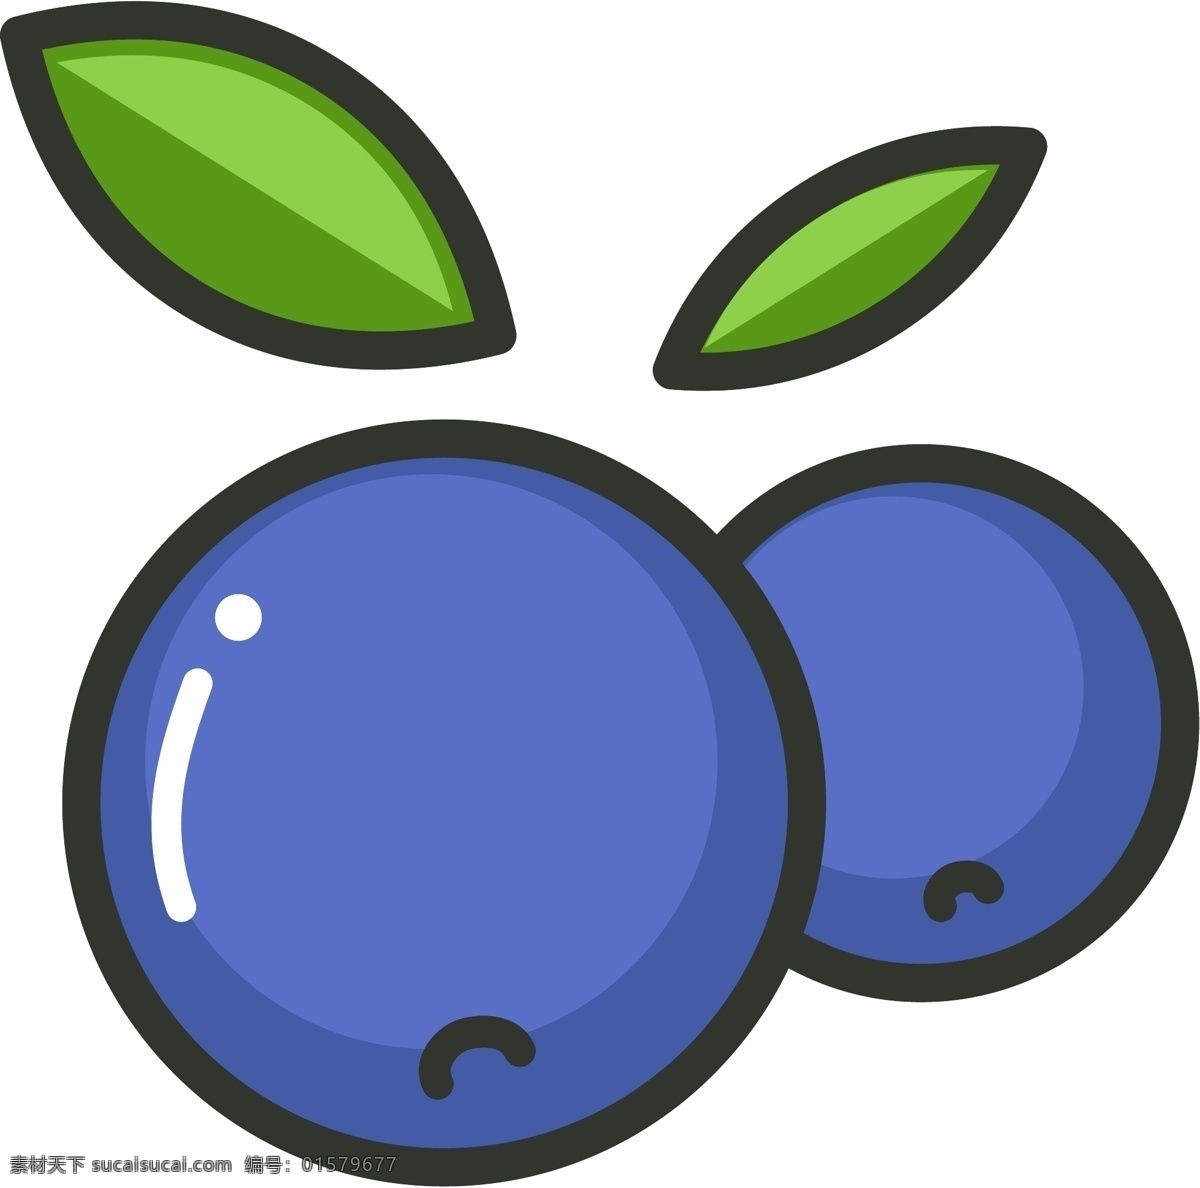 图标素材 图标 图标设计 简约图标 蓝莓 水果 水果图标 卡通蓝莓